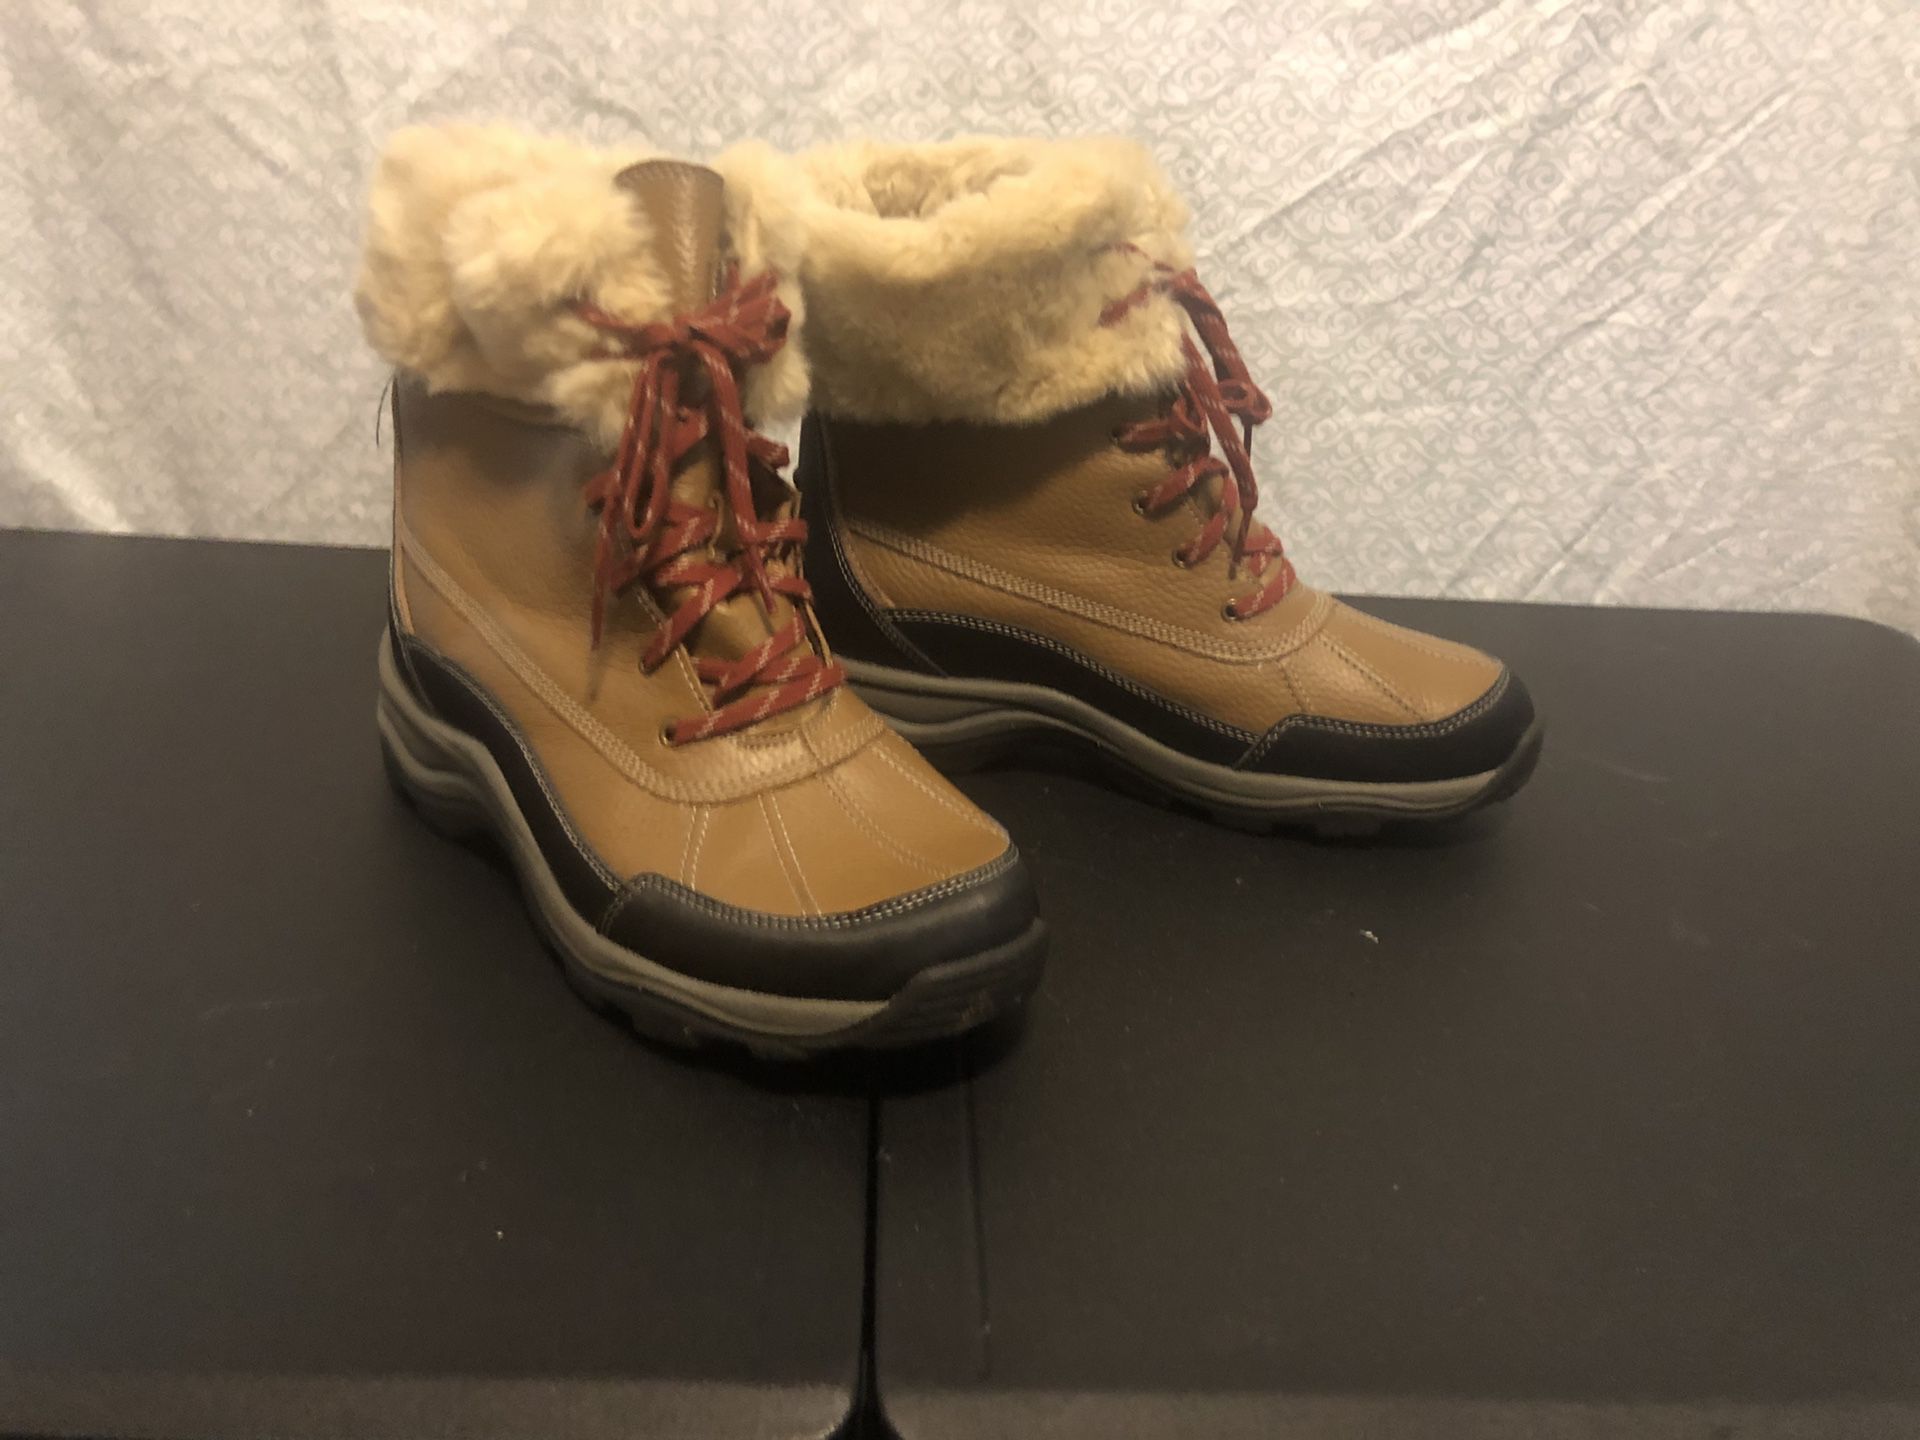 Clark’s Winter boots